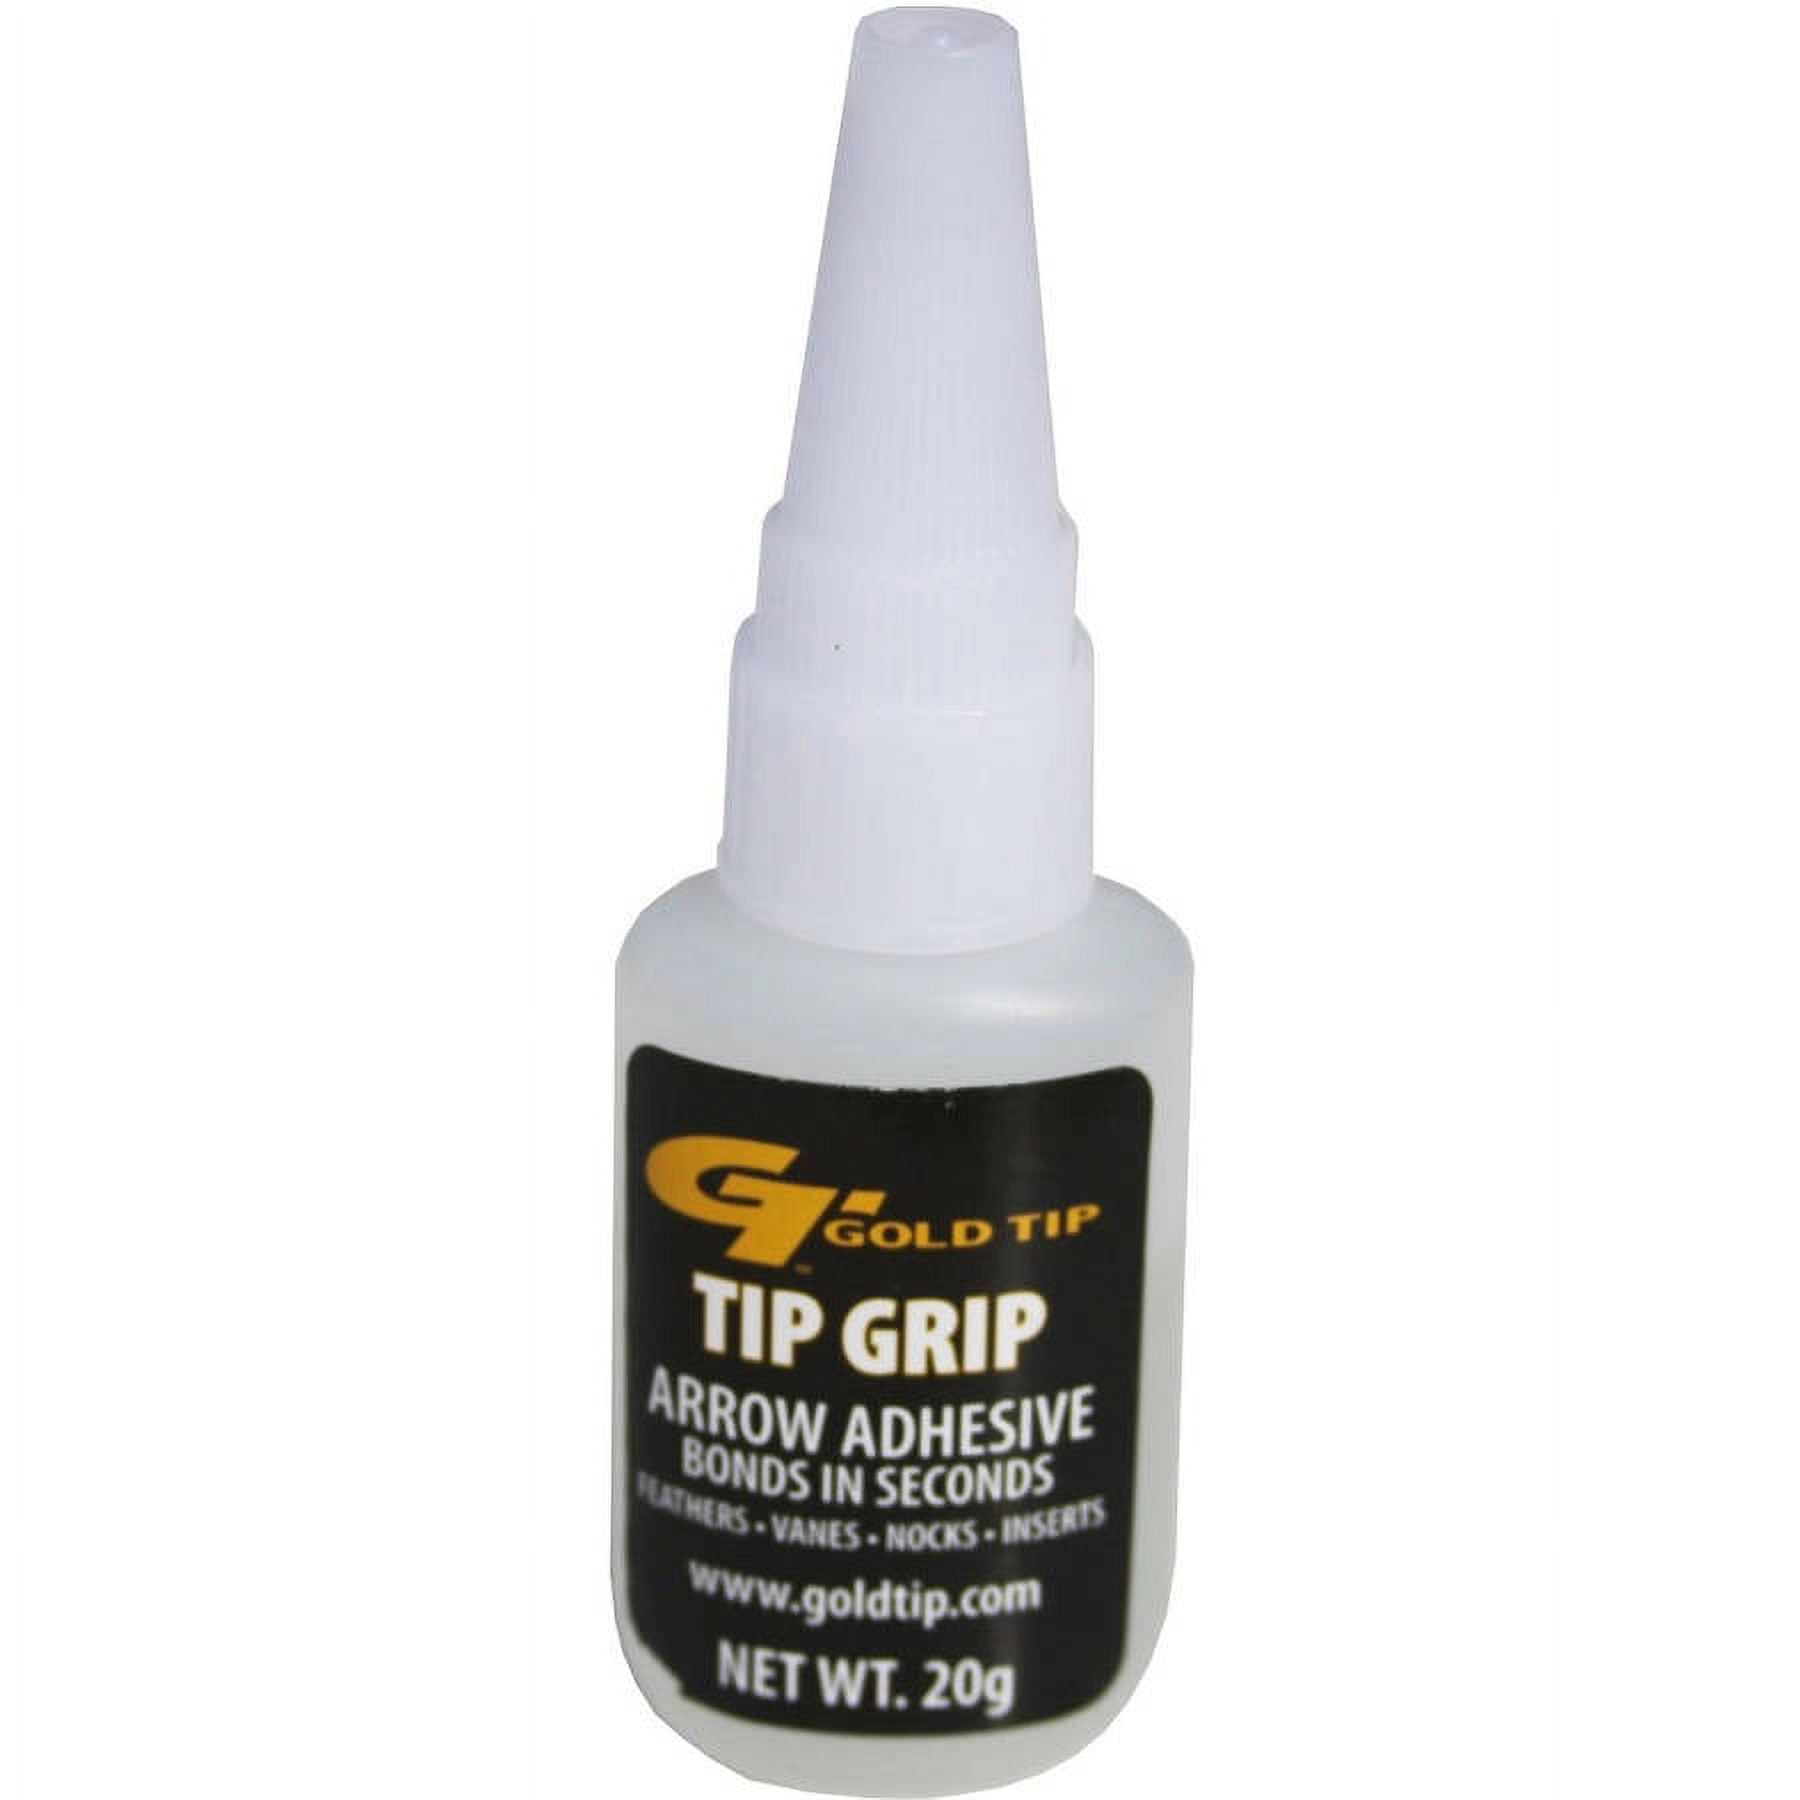 Krazy Glue® KG48348MR Maximum Bond Glue with Extended Precision